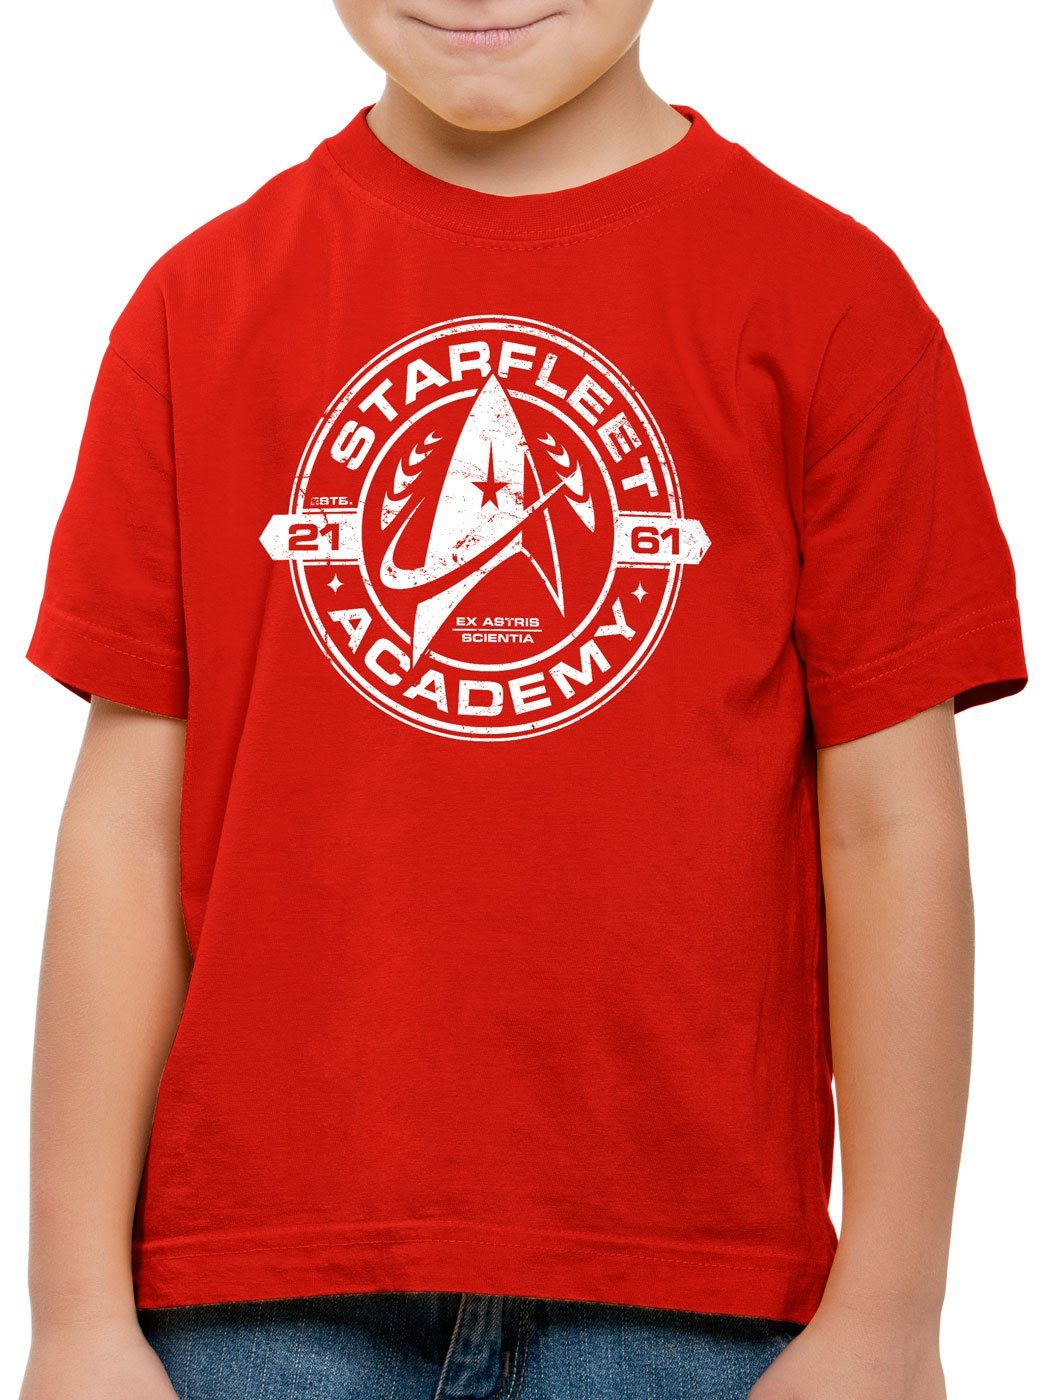 Academy trekkie trek spock T-Shirt rot style3 Starfleet Kinder Print-Shirt kirk